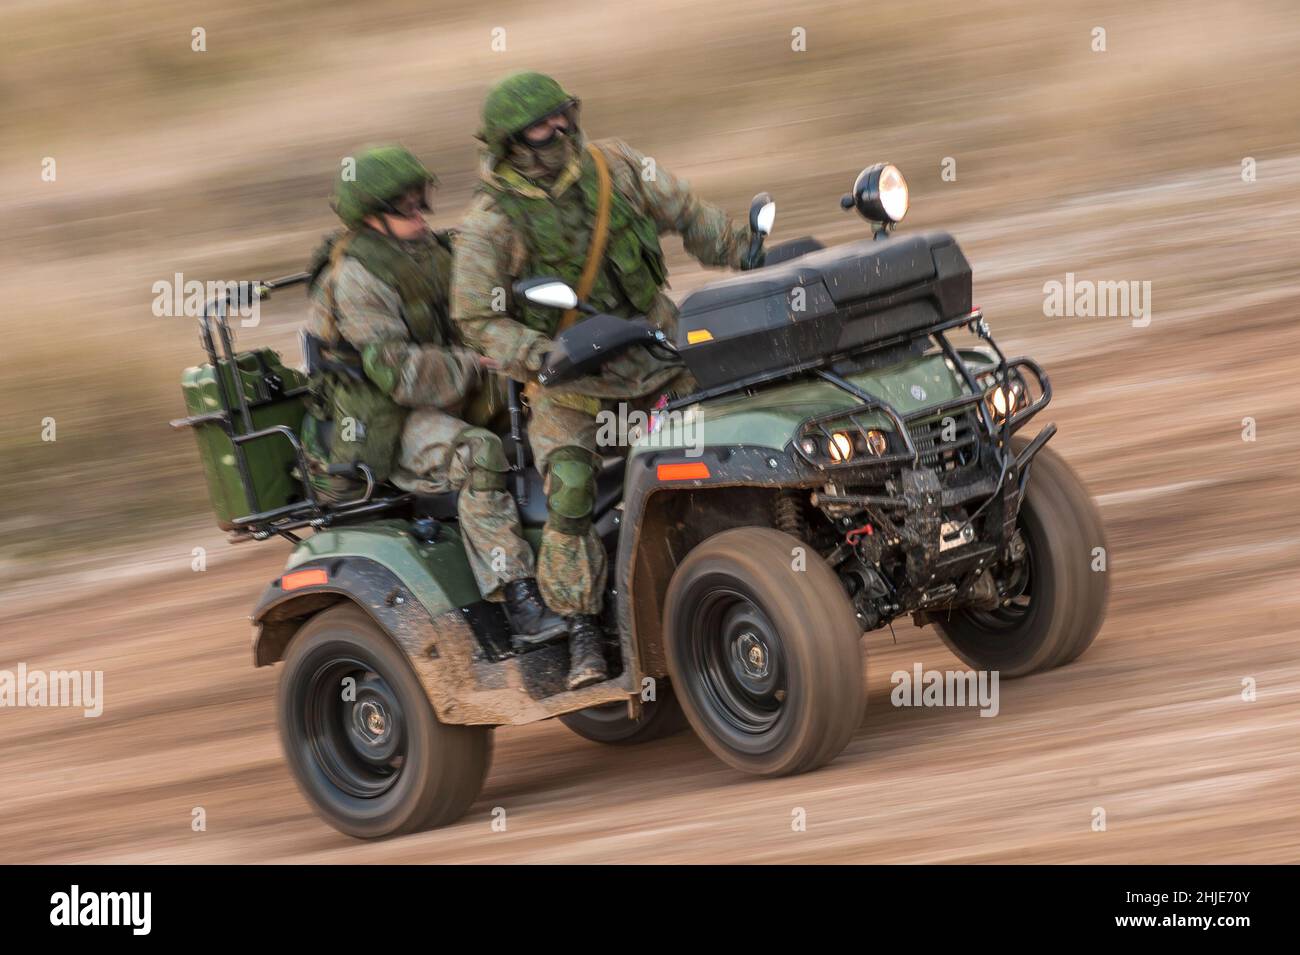 LUOGO NON DIVULGATO, novembre 2016; soldati delle forze armate russe (VDV) che cavalcano su AM-1 ATM (All Terrain Vehicle o quad) Foto Stock